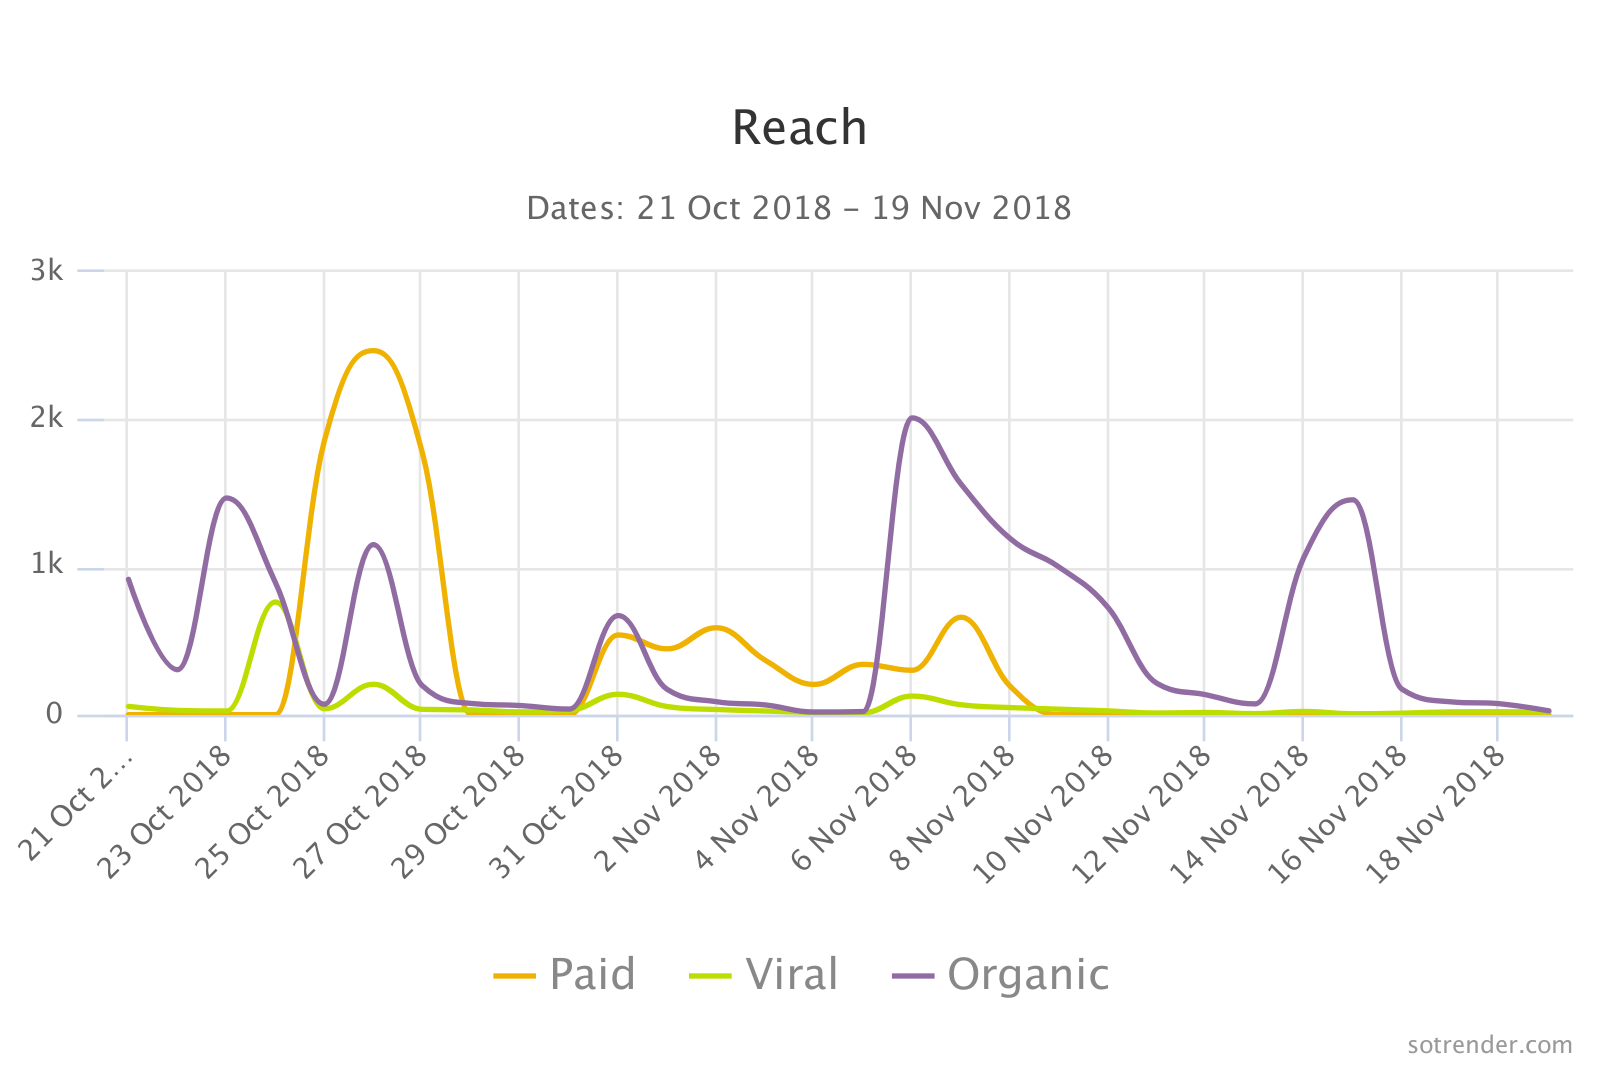 Reach analysis chart in Sotrender